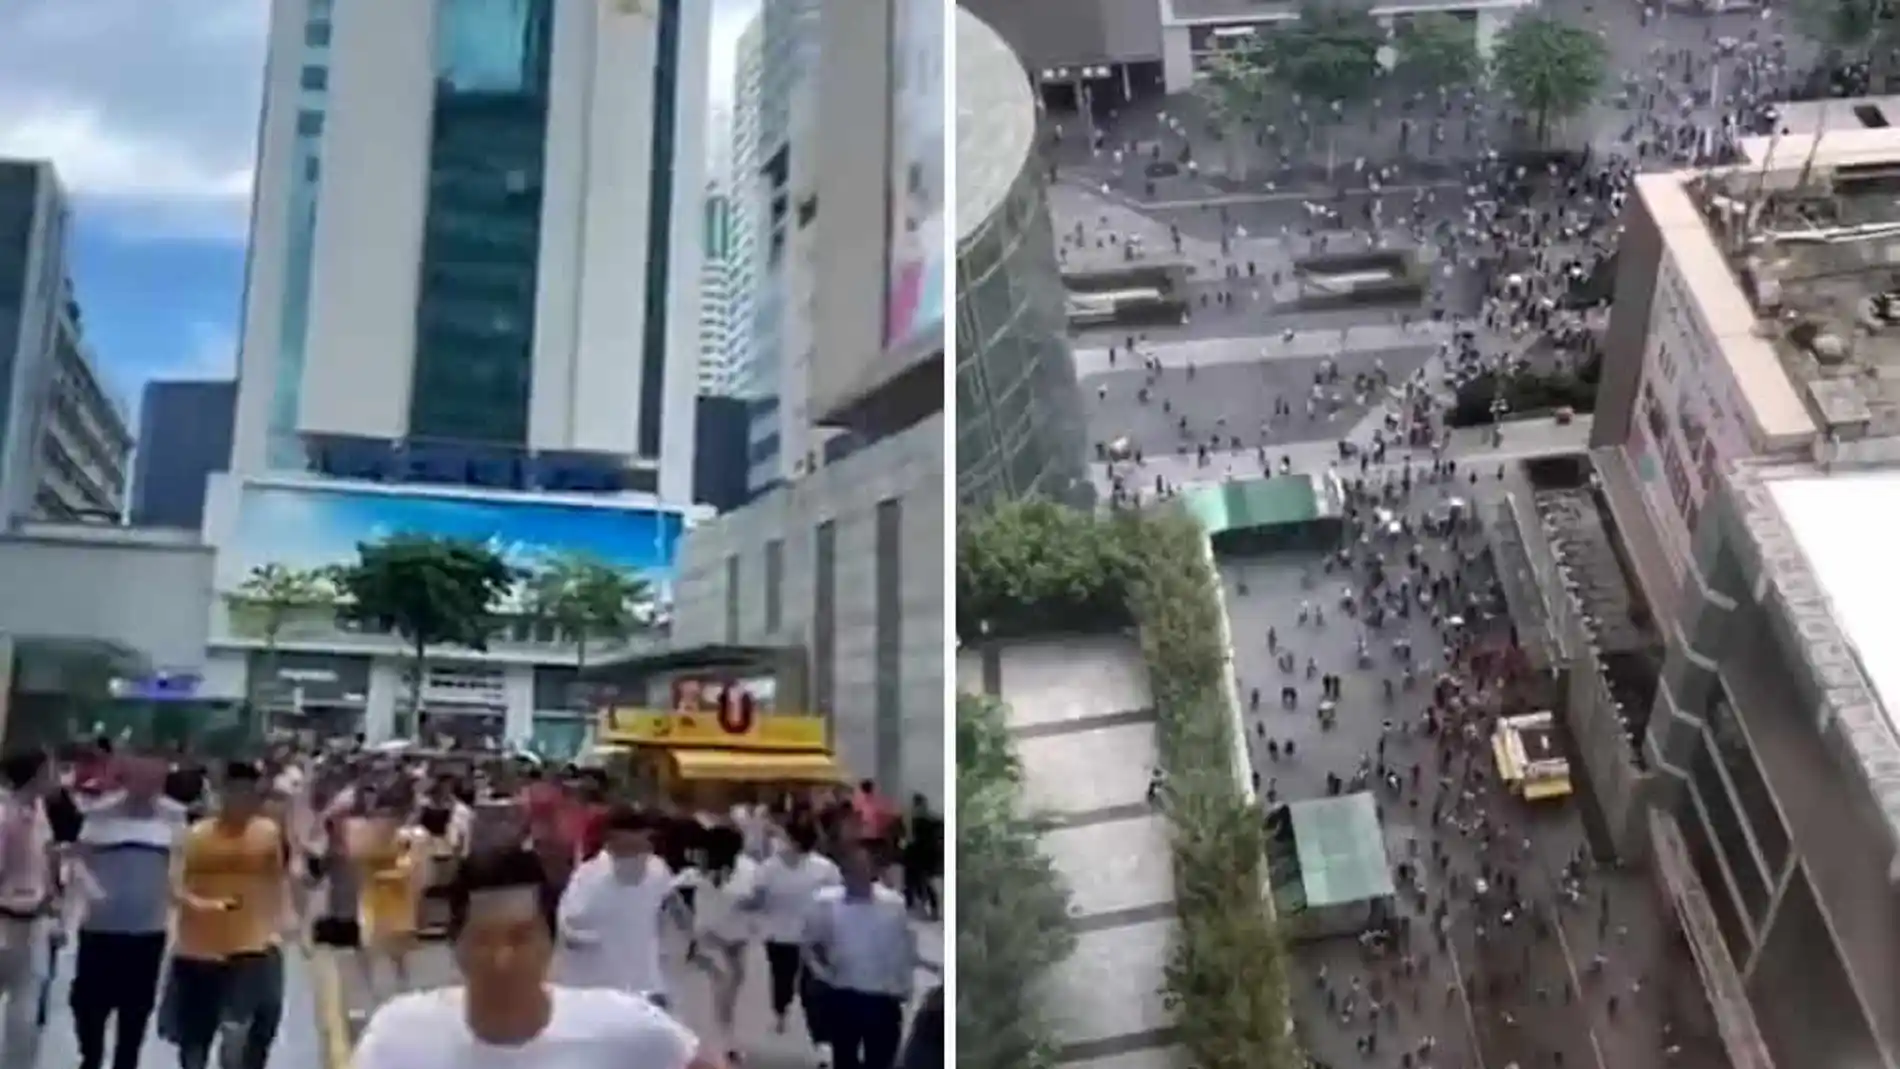 En las redes sociales circulan varios vídeos grabados por testigos mostrando el rascacielos temblando sobre sus cimientos y a cientos de personas saliendo corriendo ante el pánico desatado.